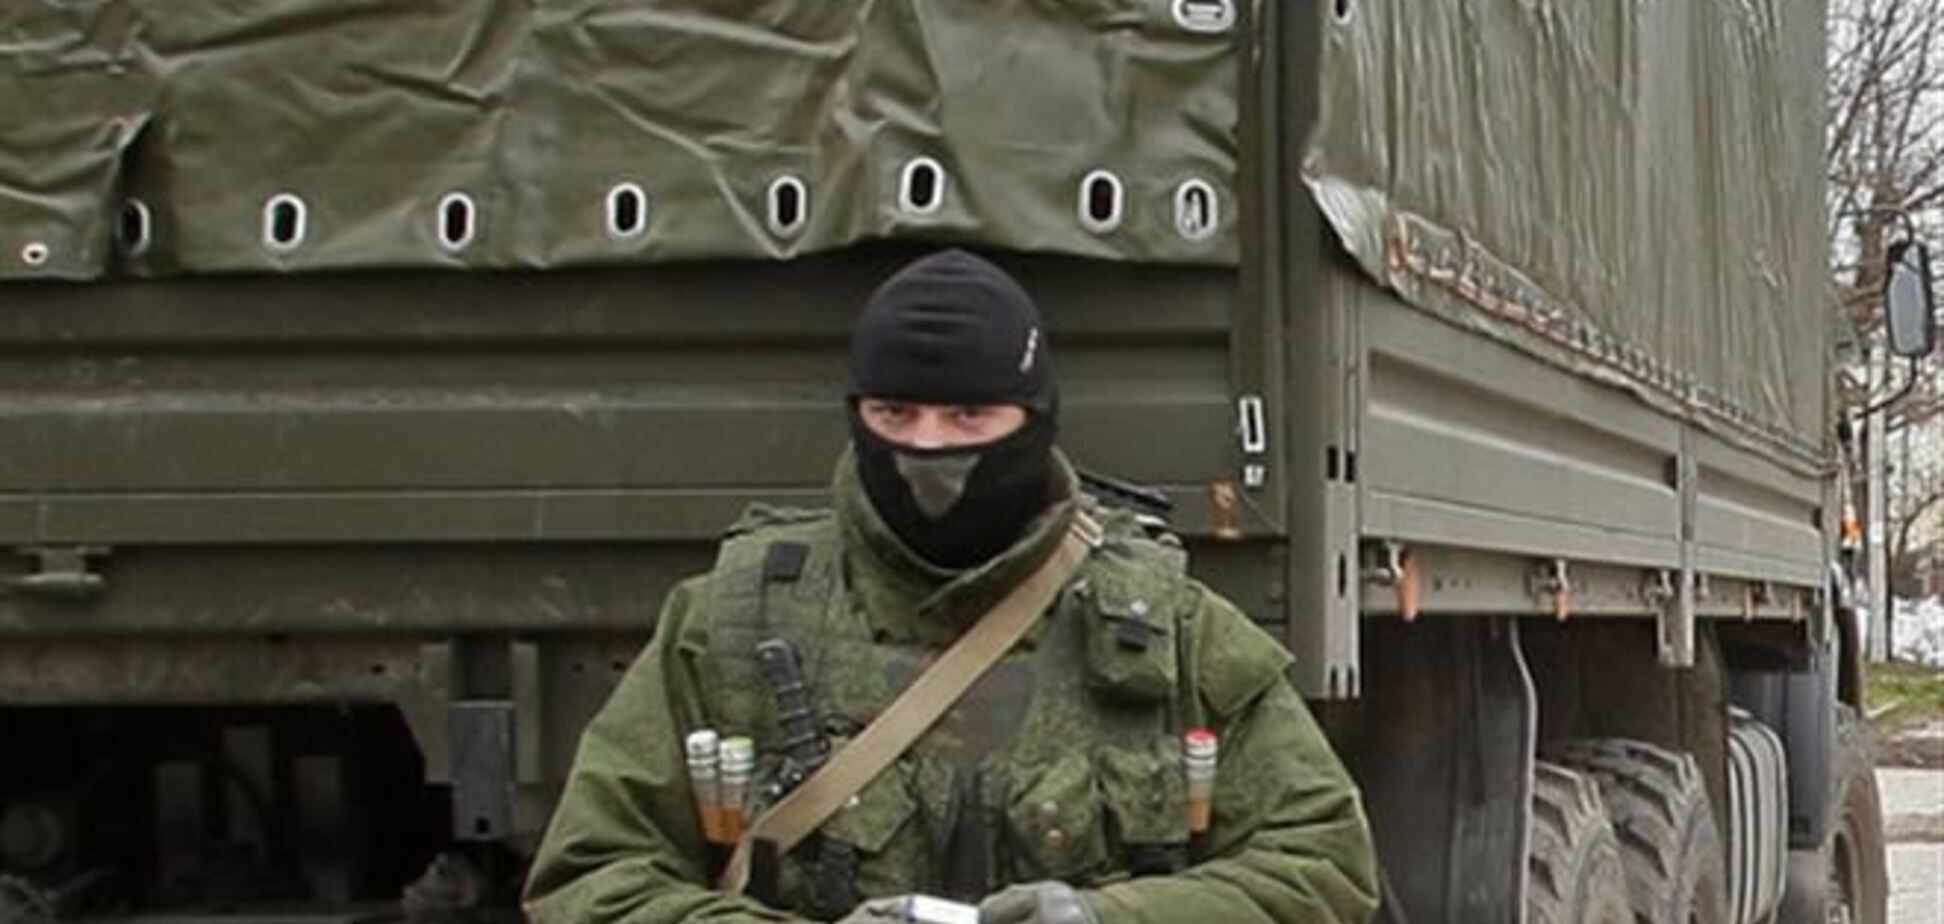 Шість військових автомобілів з озброєними людьми незаконно перетнули прикордонний у Криму - Держприкордонслужба